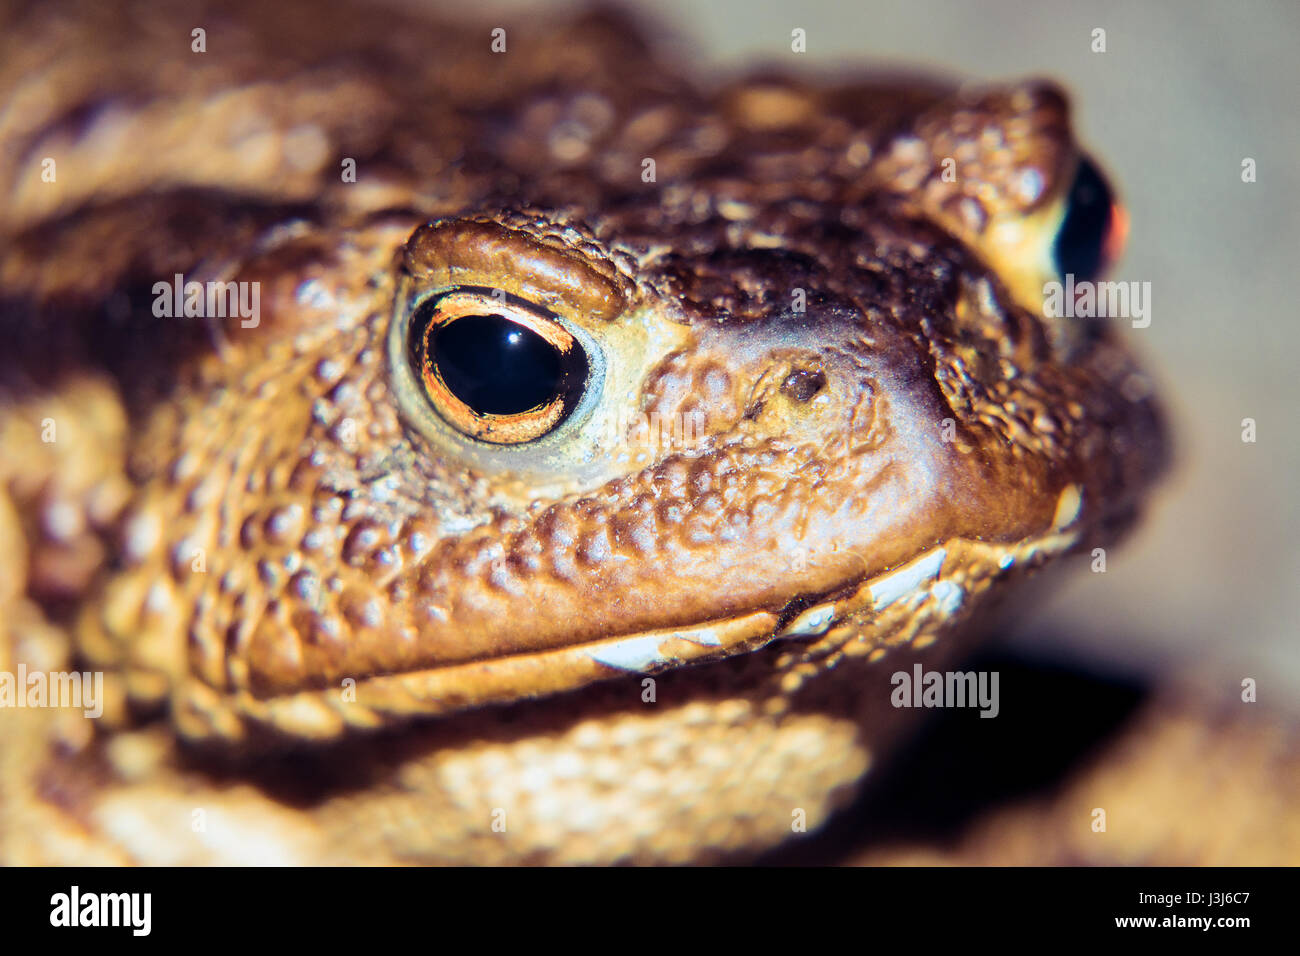 Common toad portrait Stock Photo